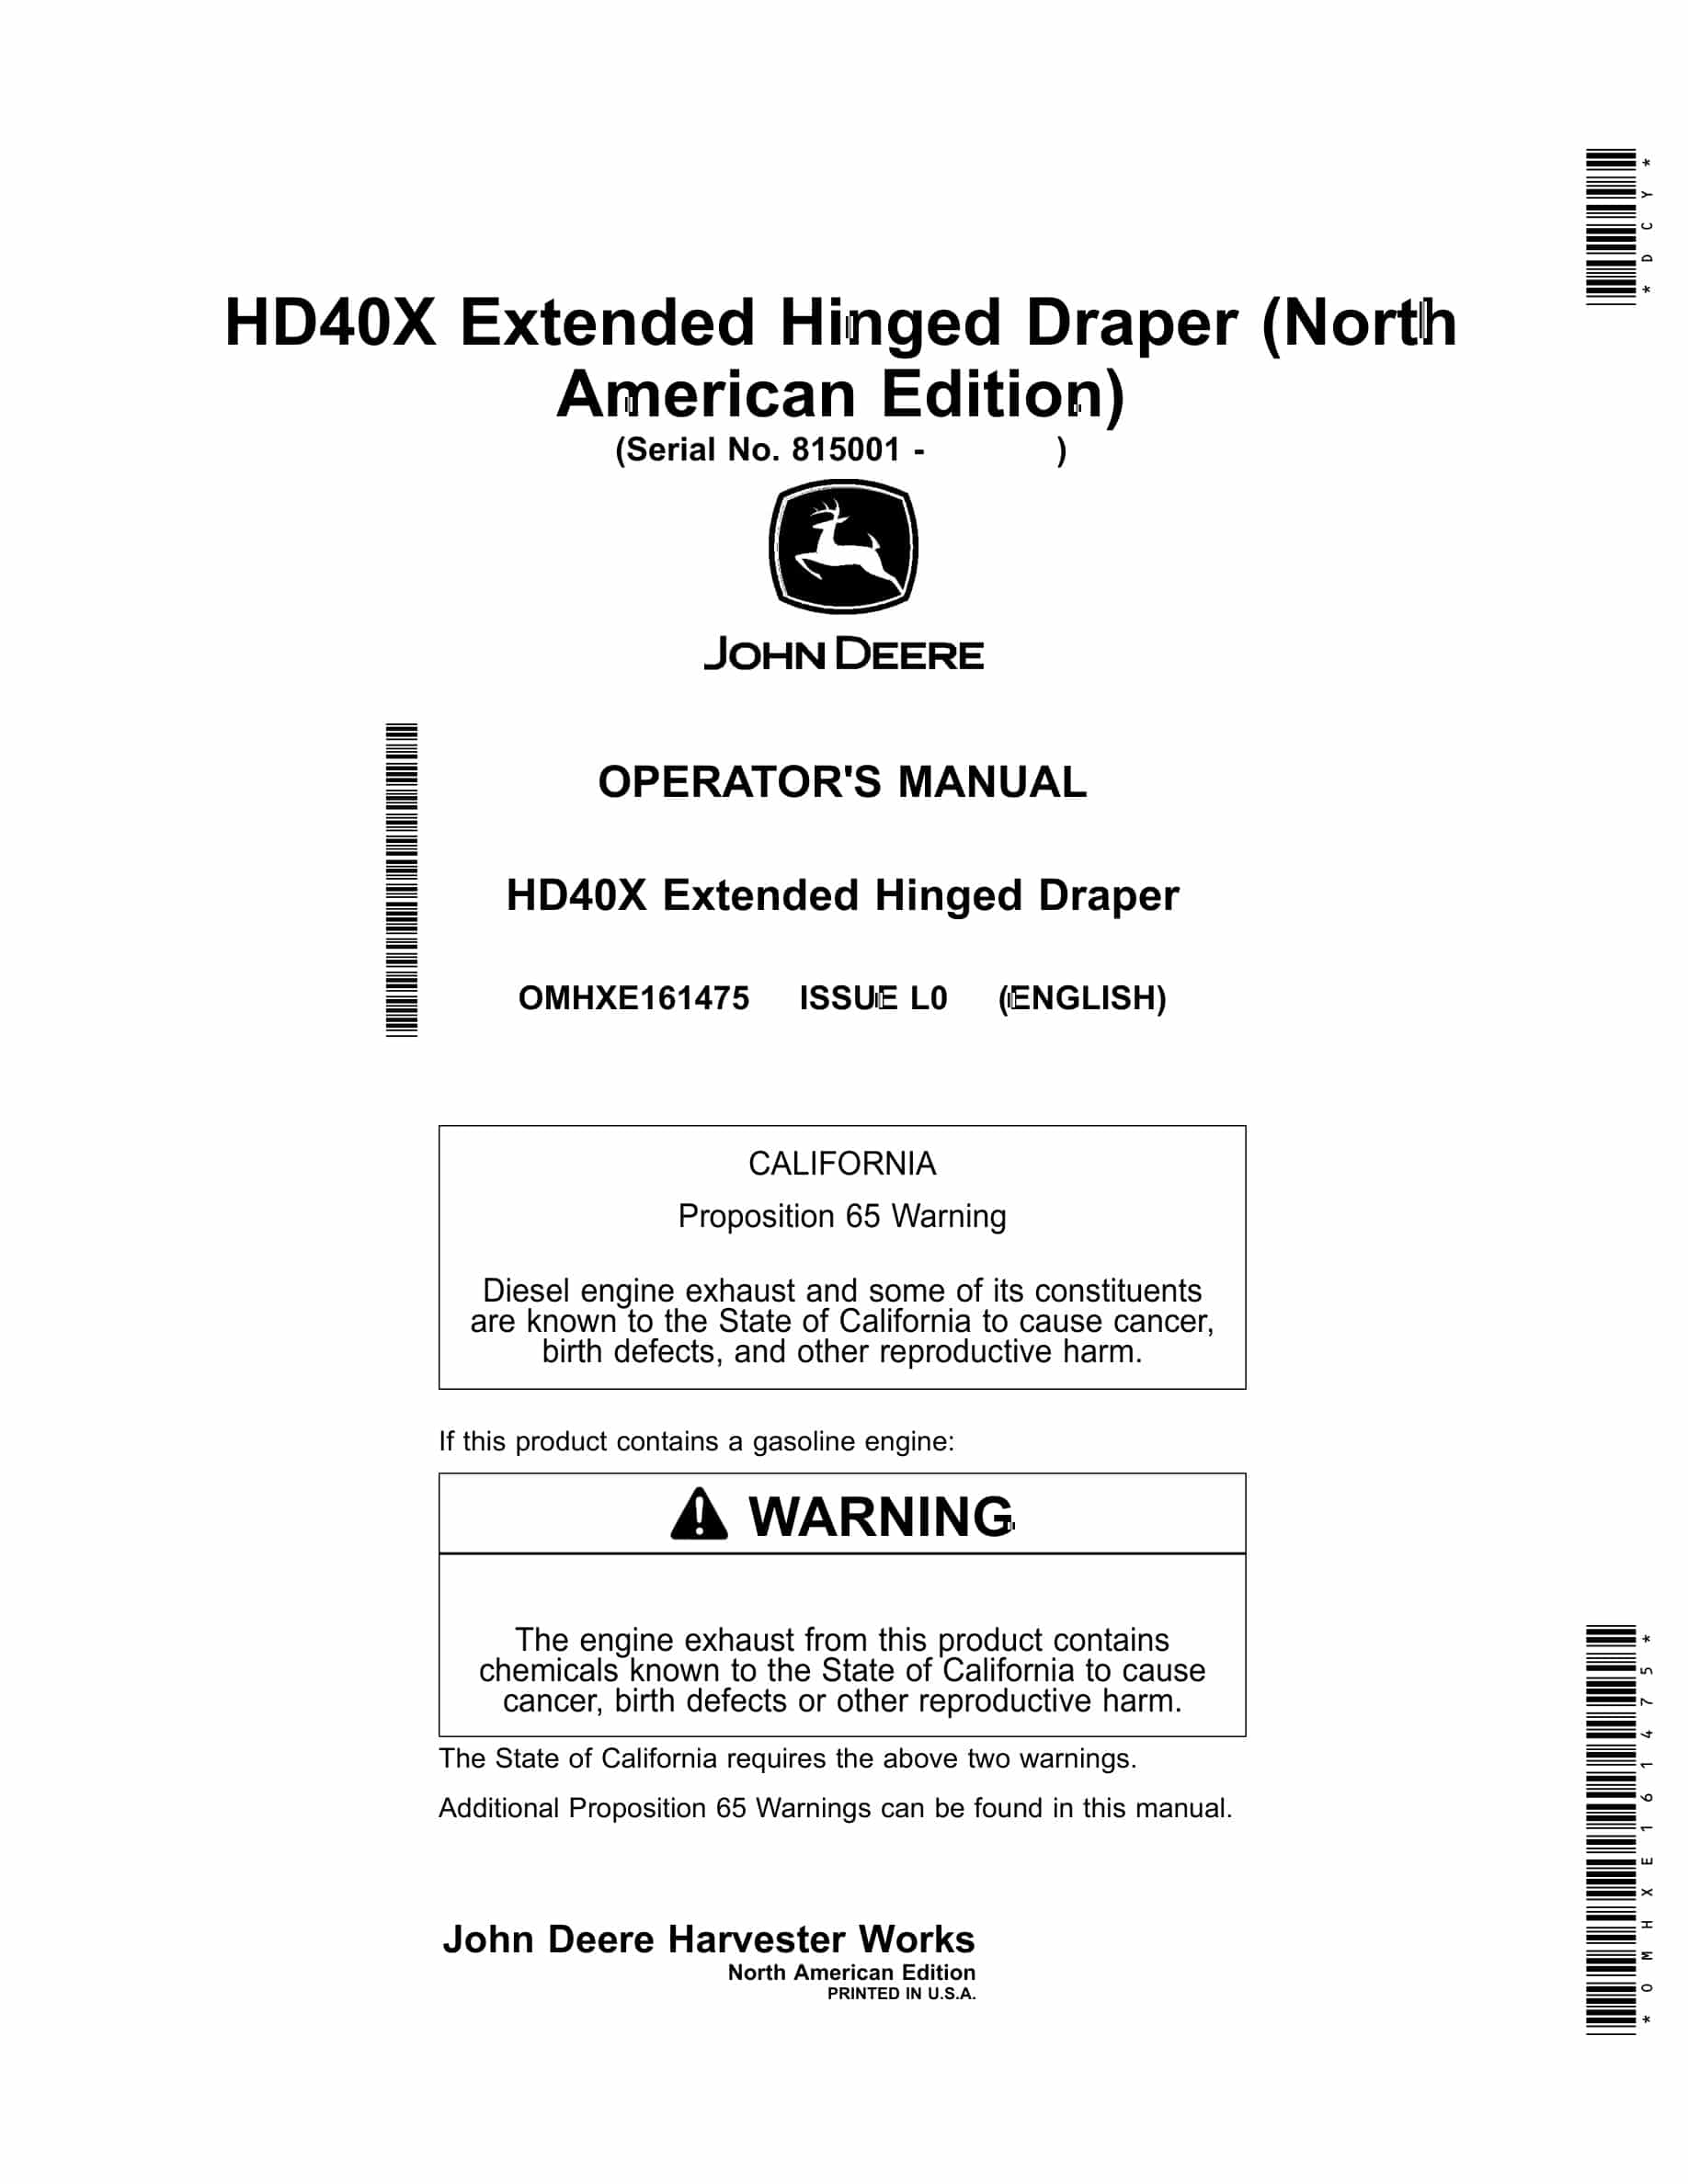 John Deere HD40X Extended Hinged Draper Operator Manual OMHXE161475-1